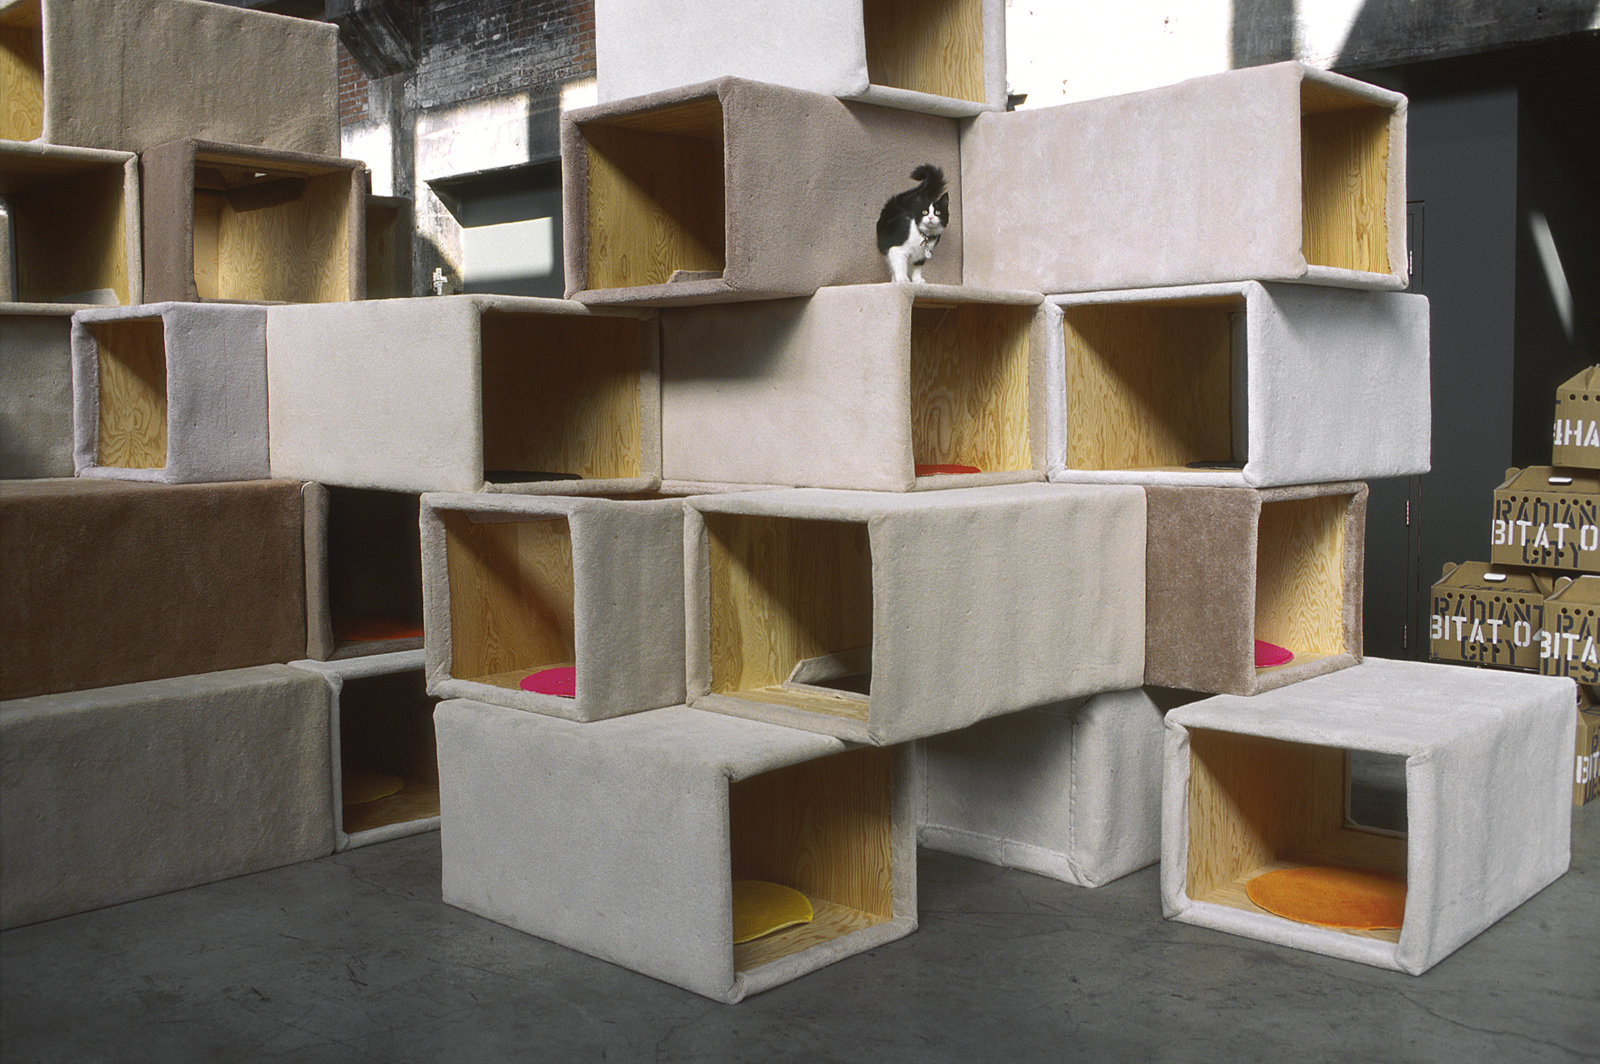 Brian Jungen, Habitat 04 - Cité radieuse des chats/Cats Radiant City (detail), 2004, plywood, carpet, cats, 132 x 180 x 336 in. (335 x 457 x 853 cm)